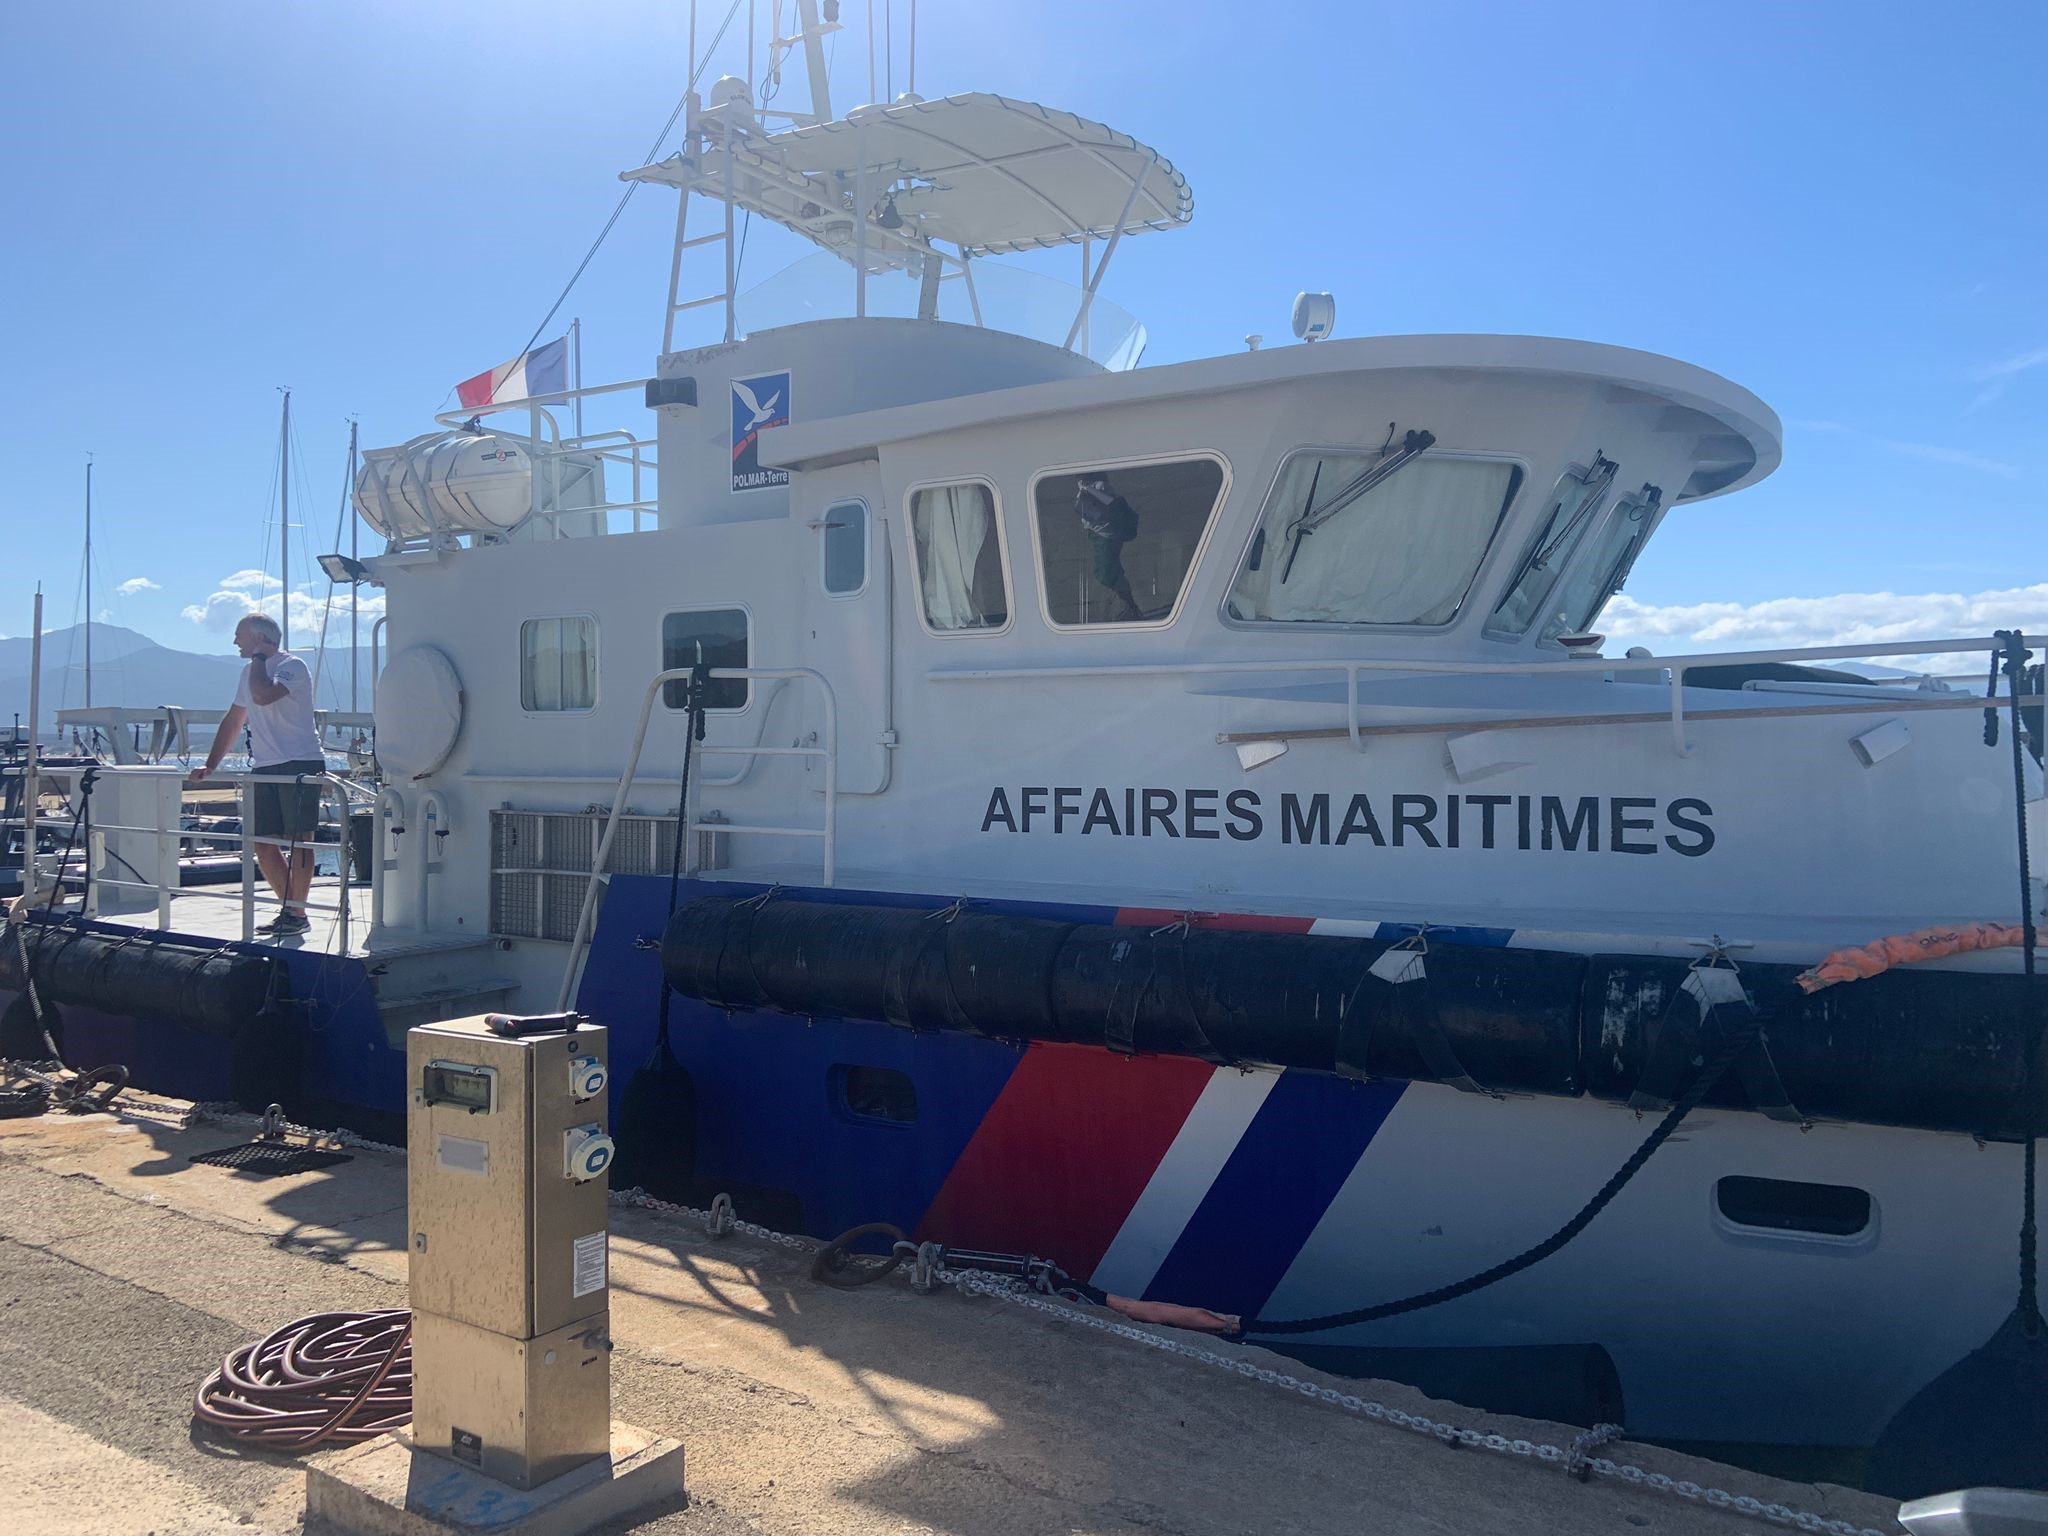 L’Office de l’Environnement de la Corse renforce son engagement dans la lutte antipollution marine